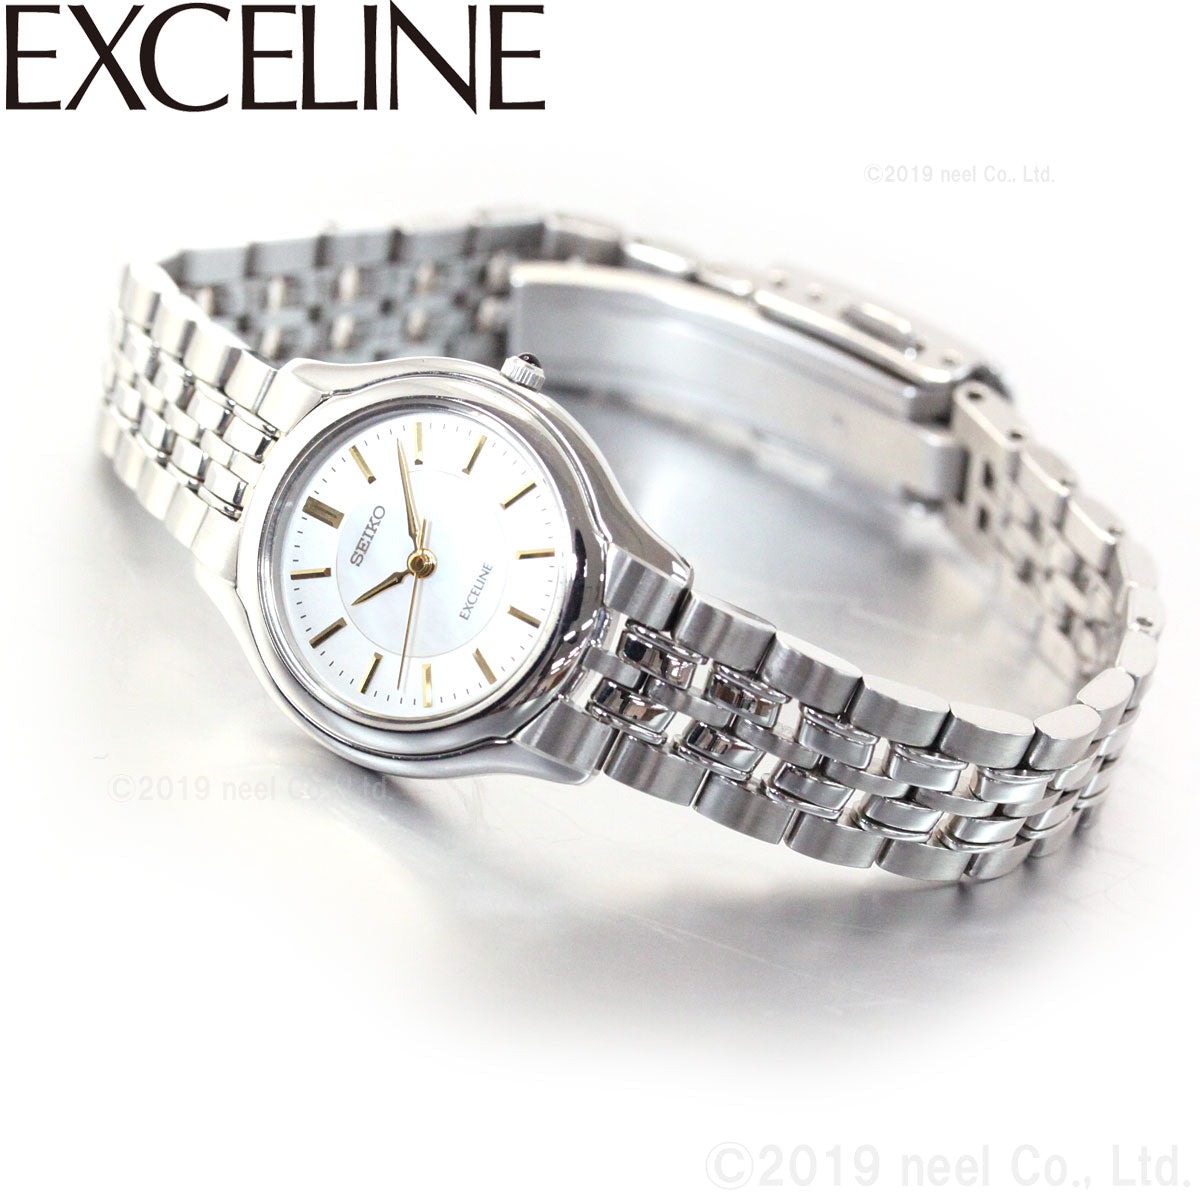 セイコー ドルチェ＆エクセリーヌ SEIKO DOLCE＆EXCELINE 腕時計 メンズ レディース ペアモデル SACL009 SWDL099